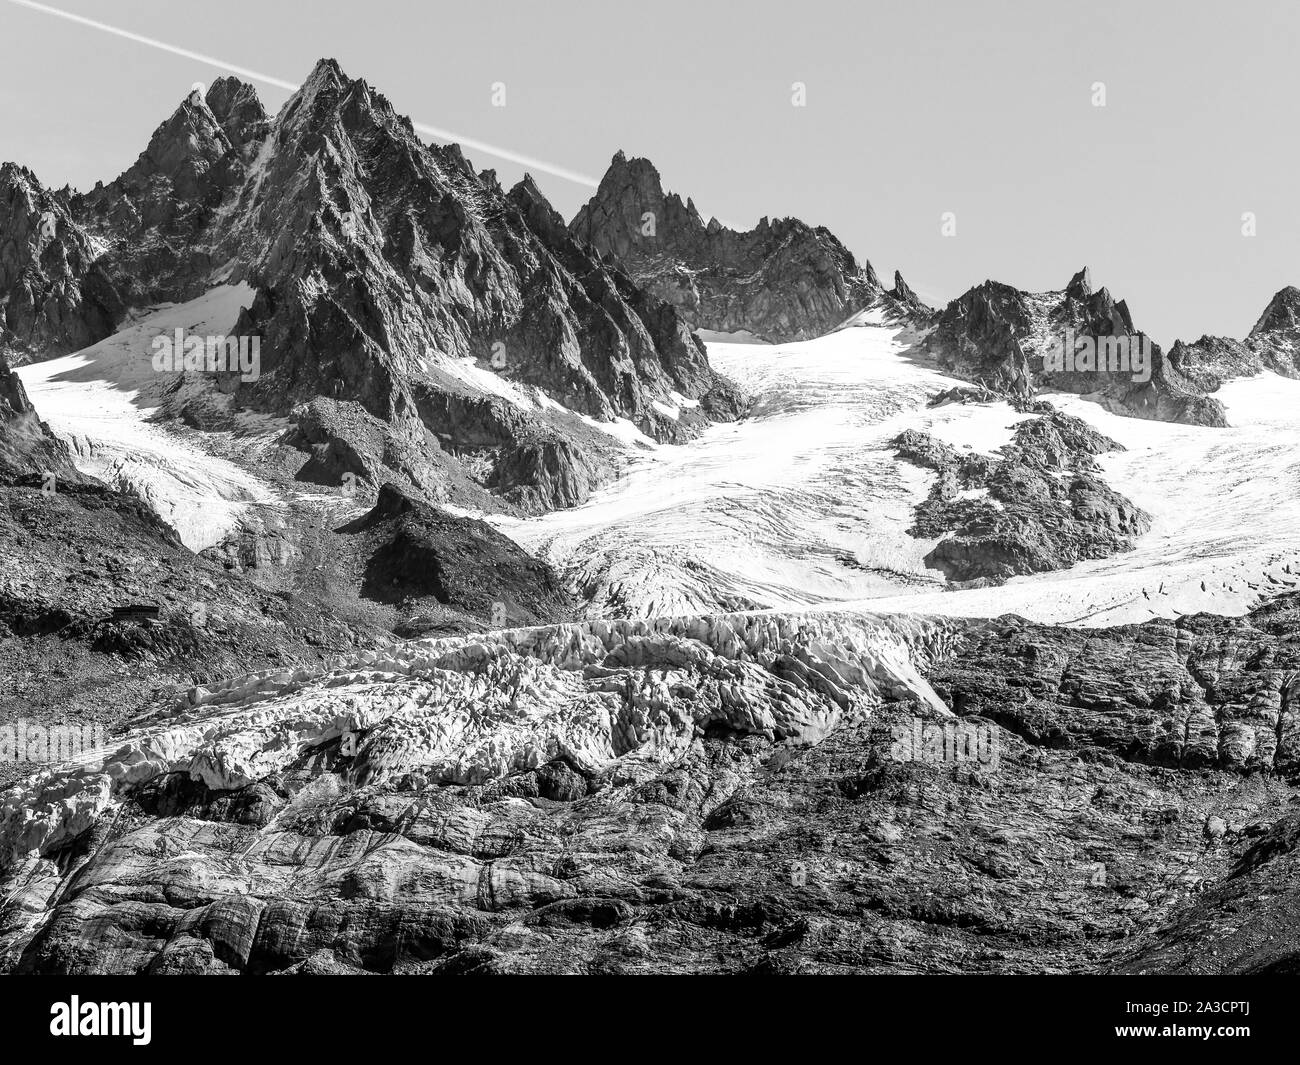 Argentieres Glacier seen from the Aiguilles Rouges balcony (Balcon des Aiguilles Rouges), Chamonix-Mont-Blanc Valley, Haute-Savoie, France Stock Photo